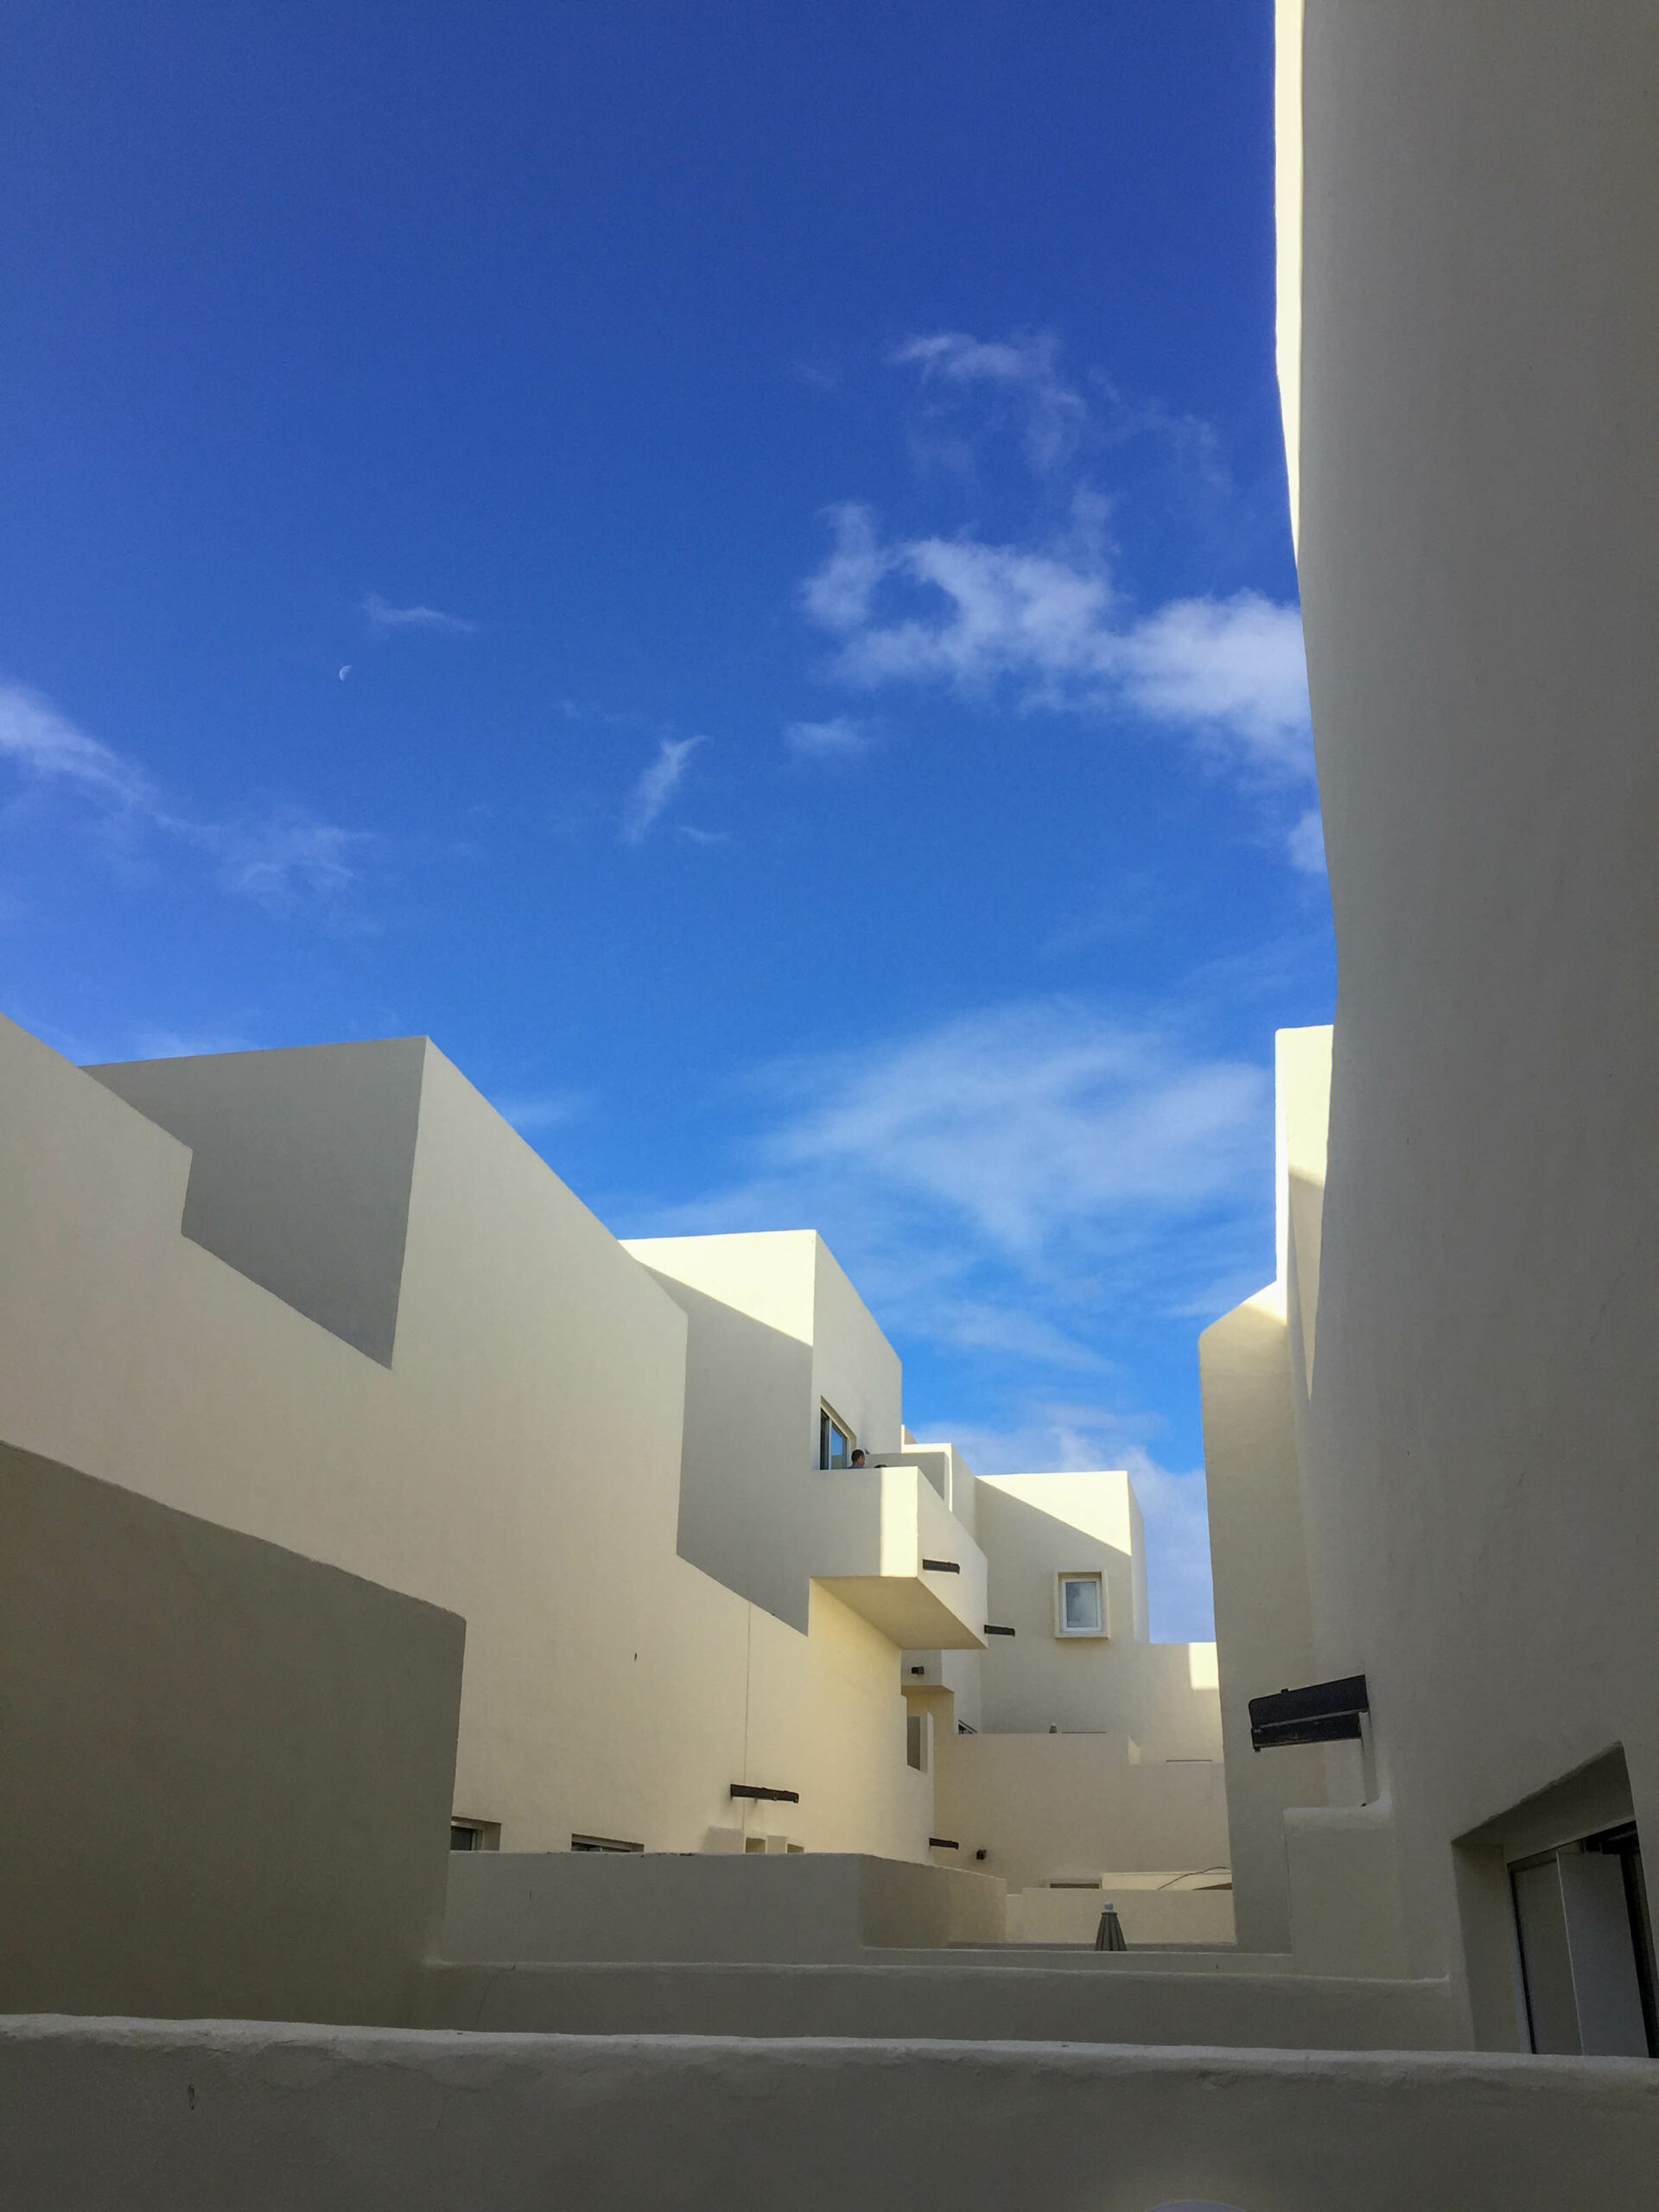 Club La Santa Architecture, Lanzarote, Canary Islands, Spain